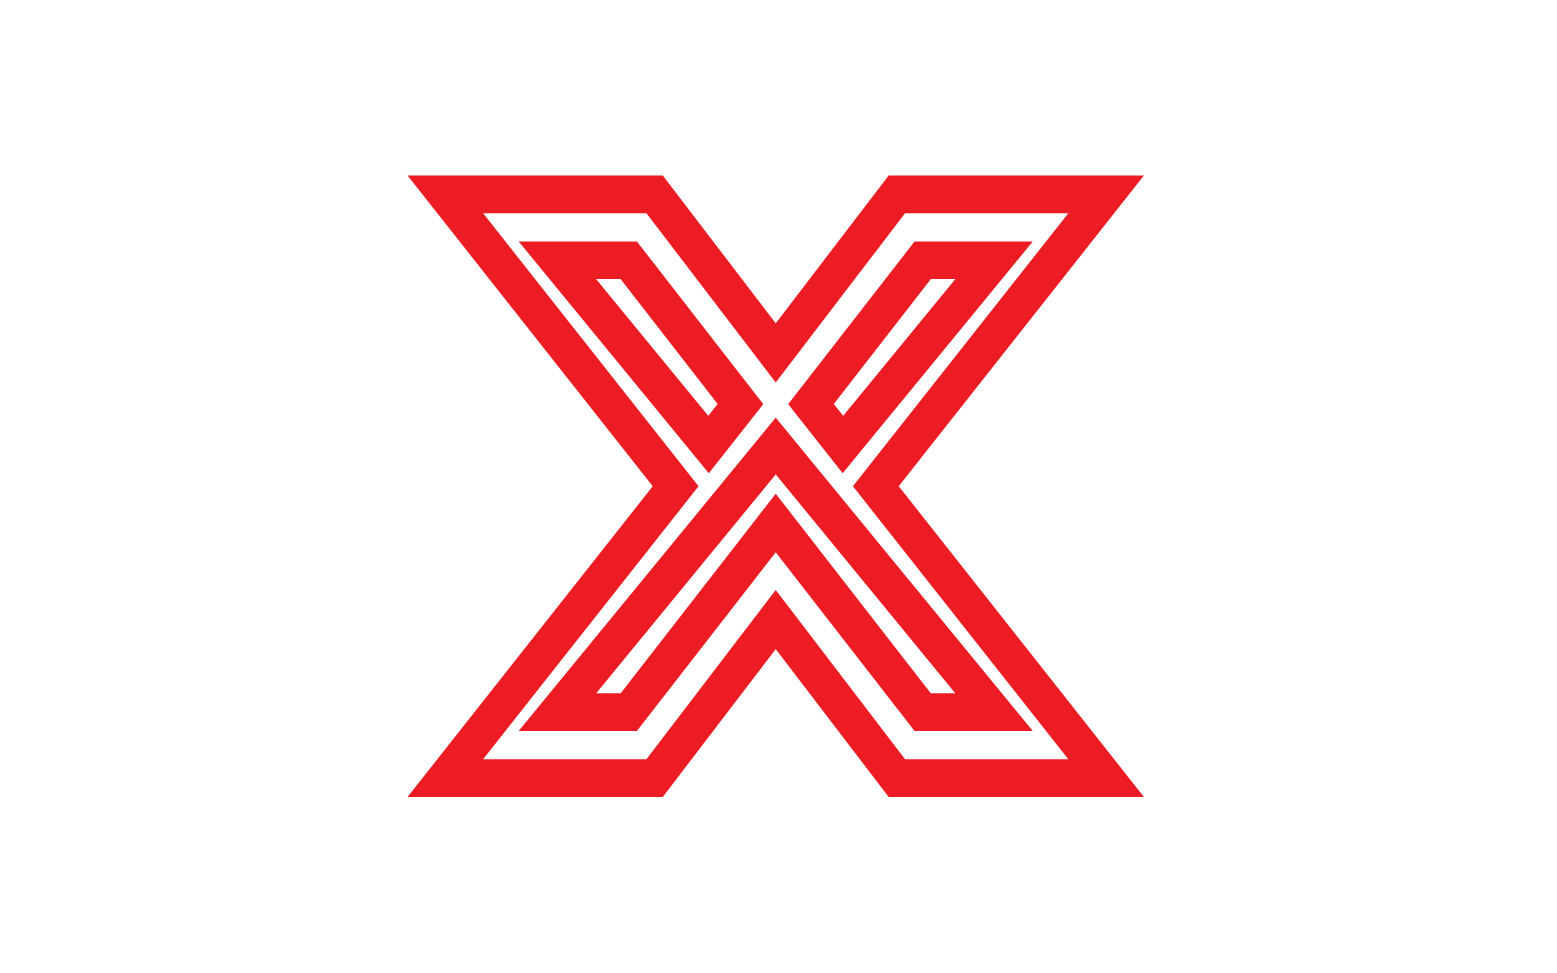 X letter initial logo vector v5